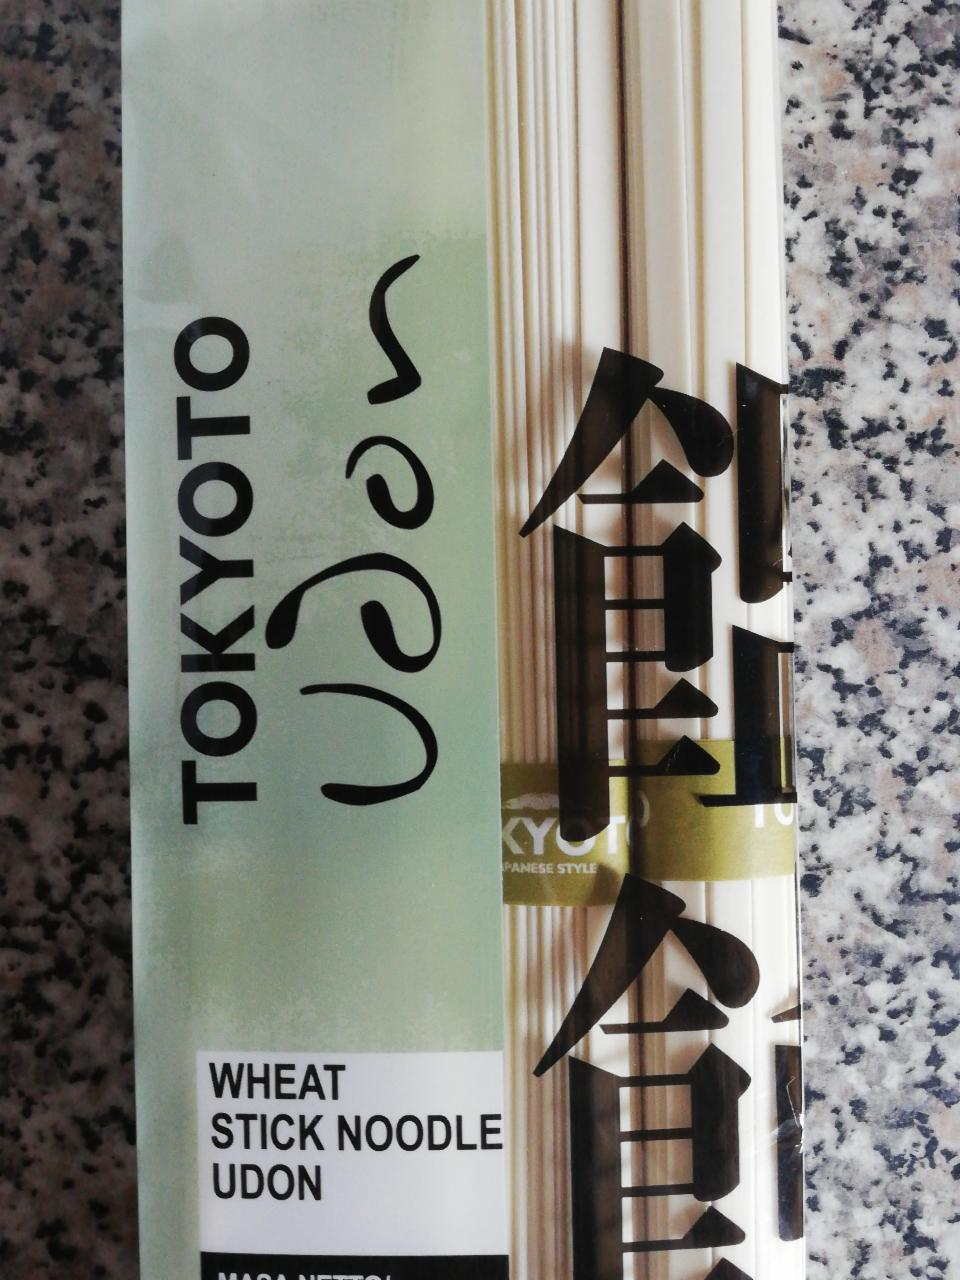 Fotografie - Vifon Tokyoto Wheat Stick Noodle Udon